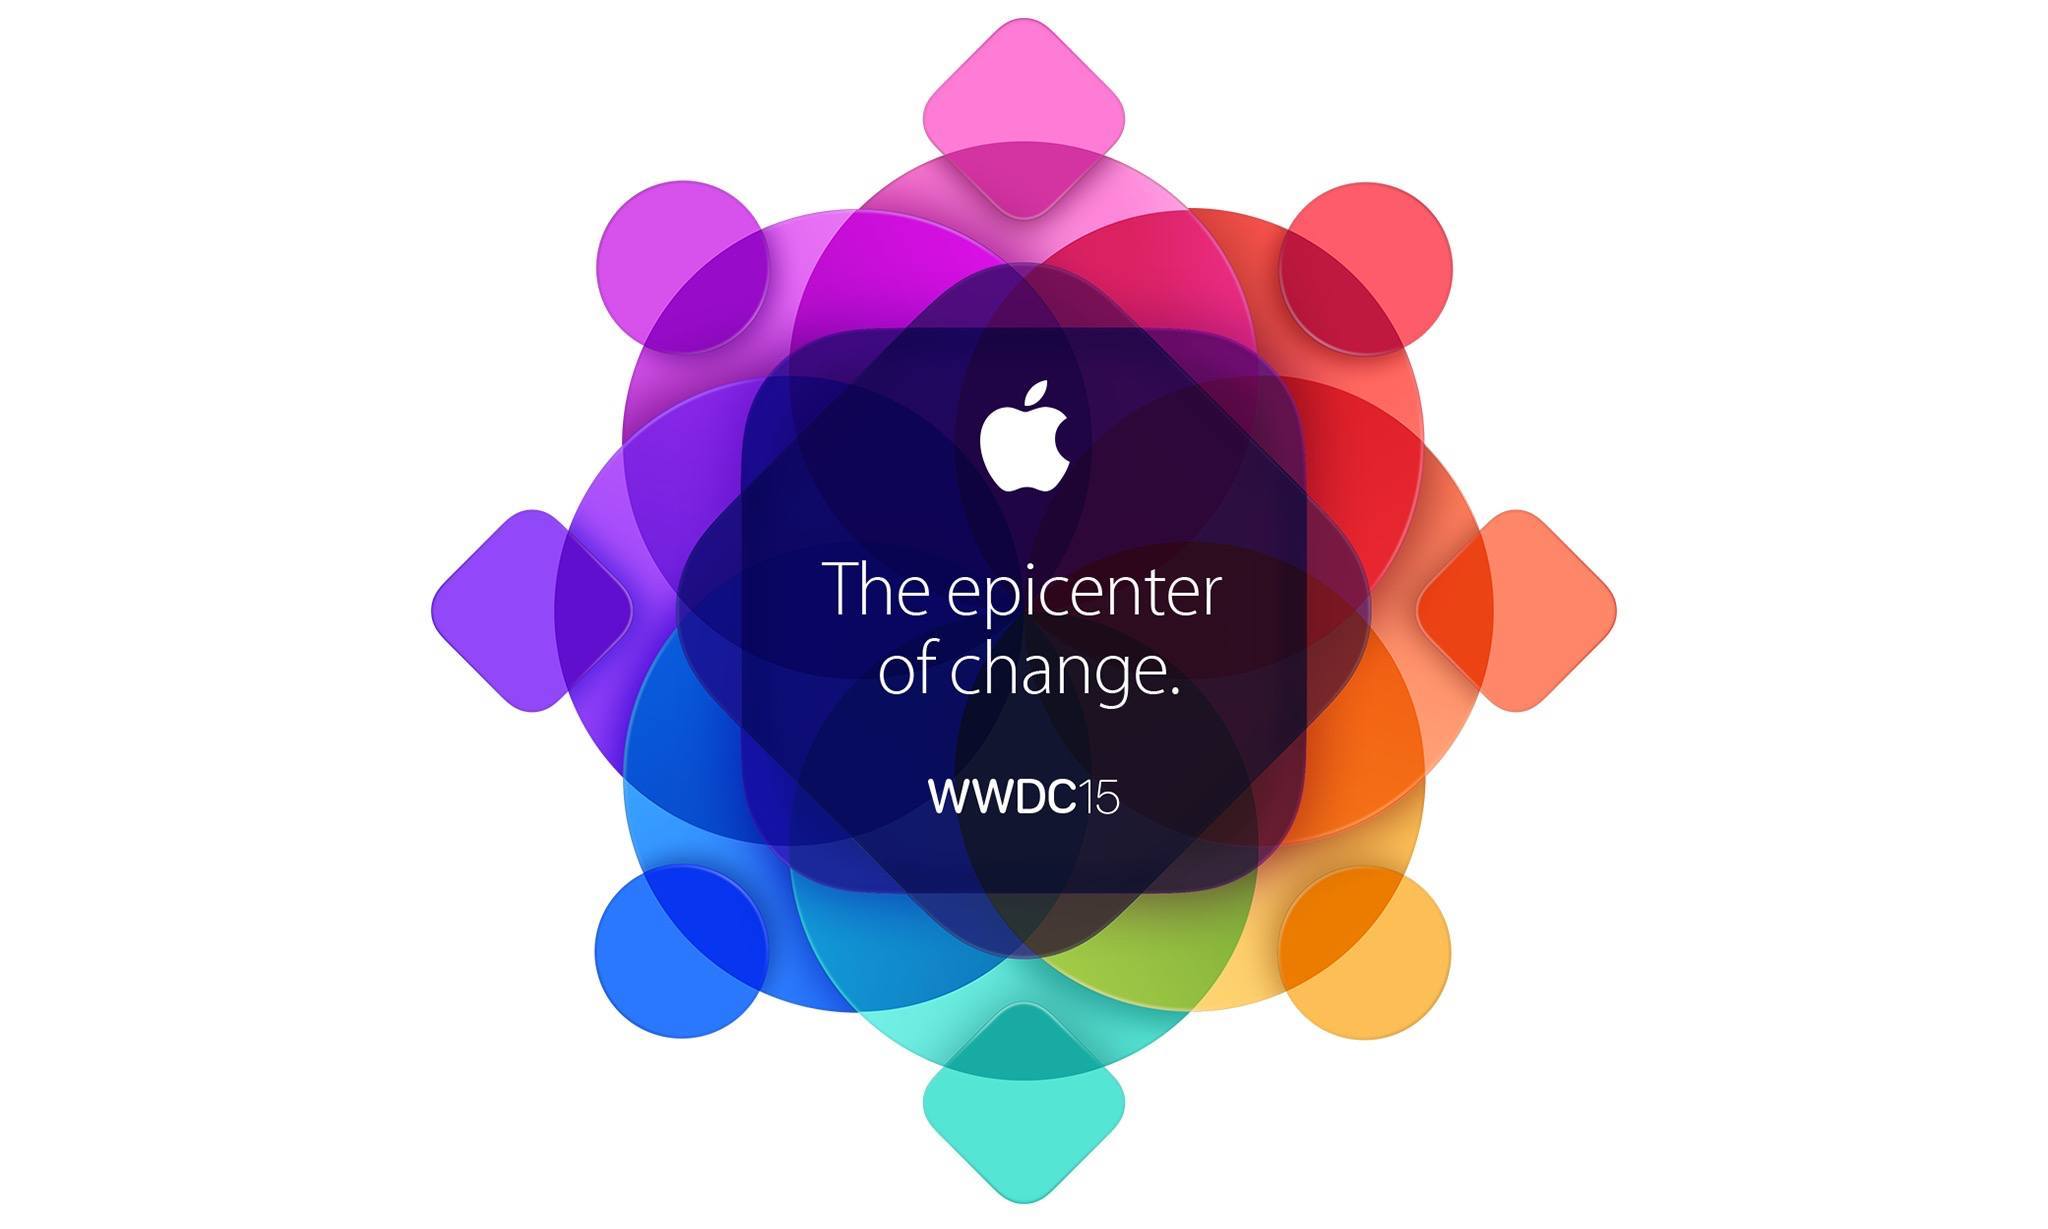 As a Consumer, I Was Underwhelmed by Apple’s WWDC15 Keynote Address